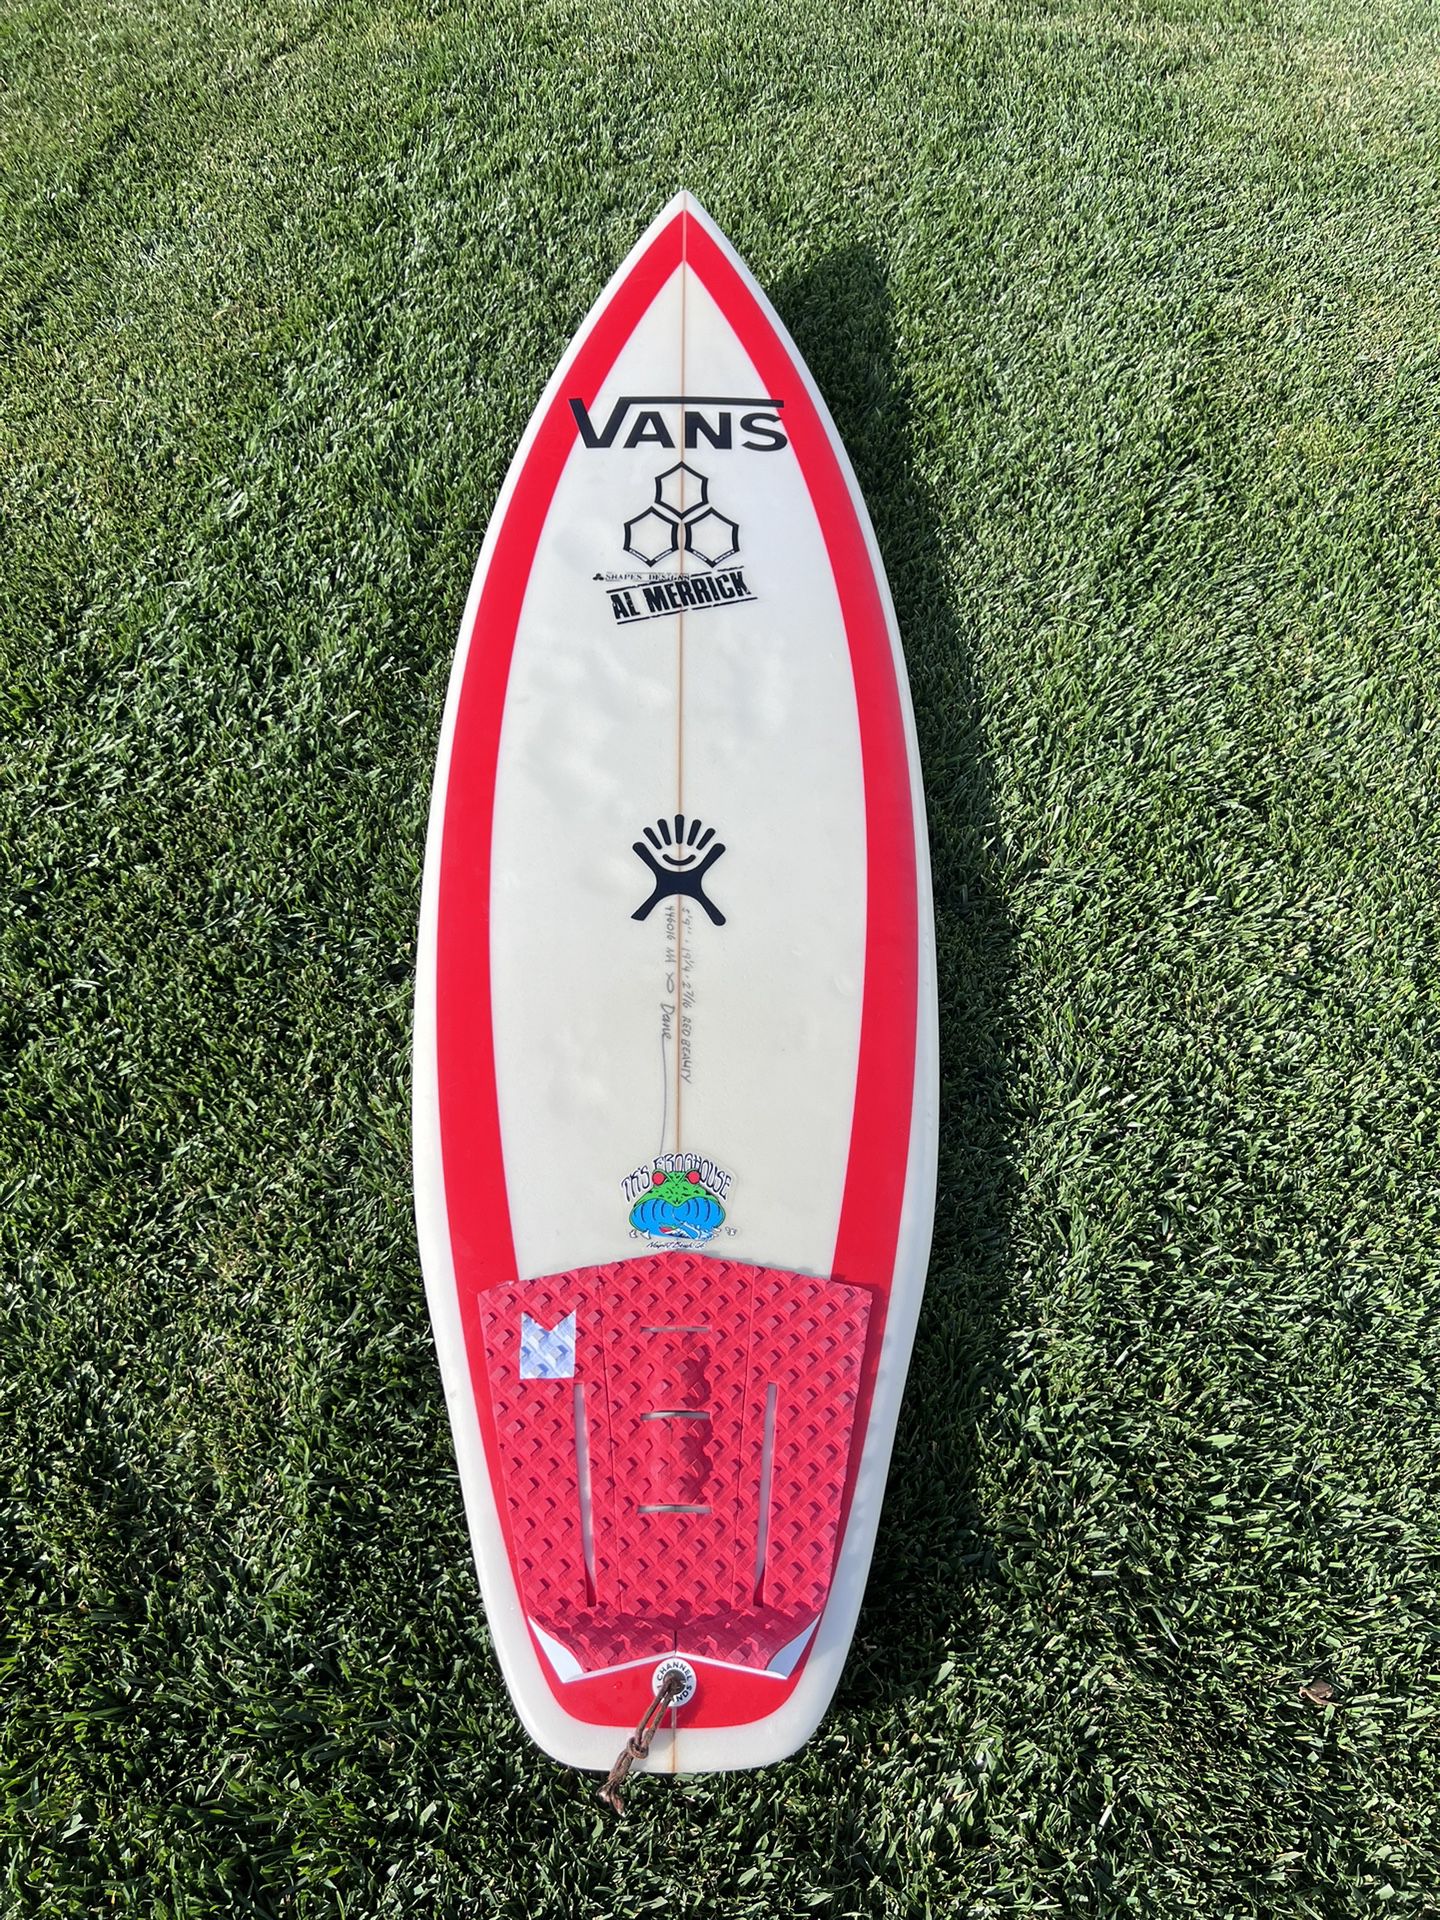 Al Merrick Red Beauty Surfboard 